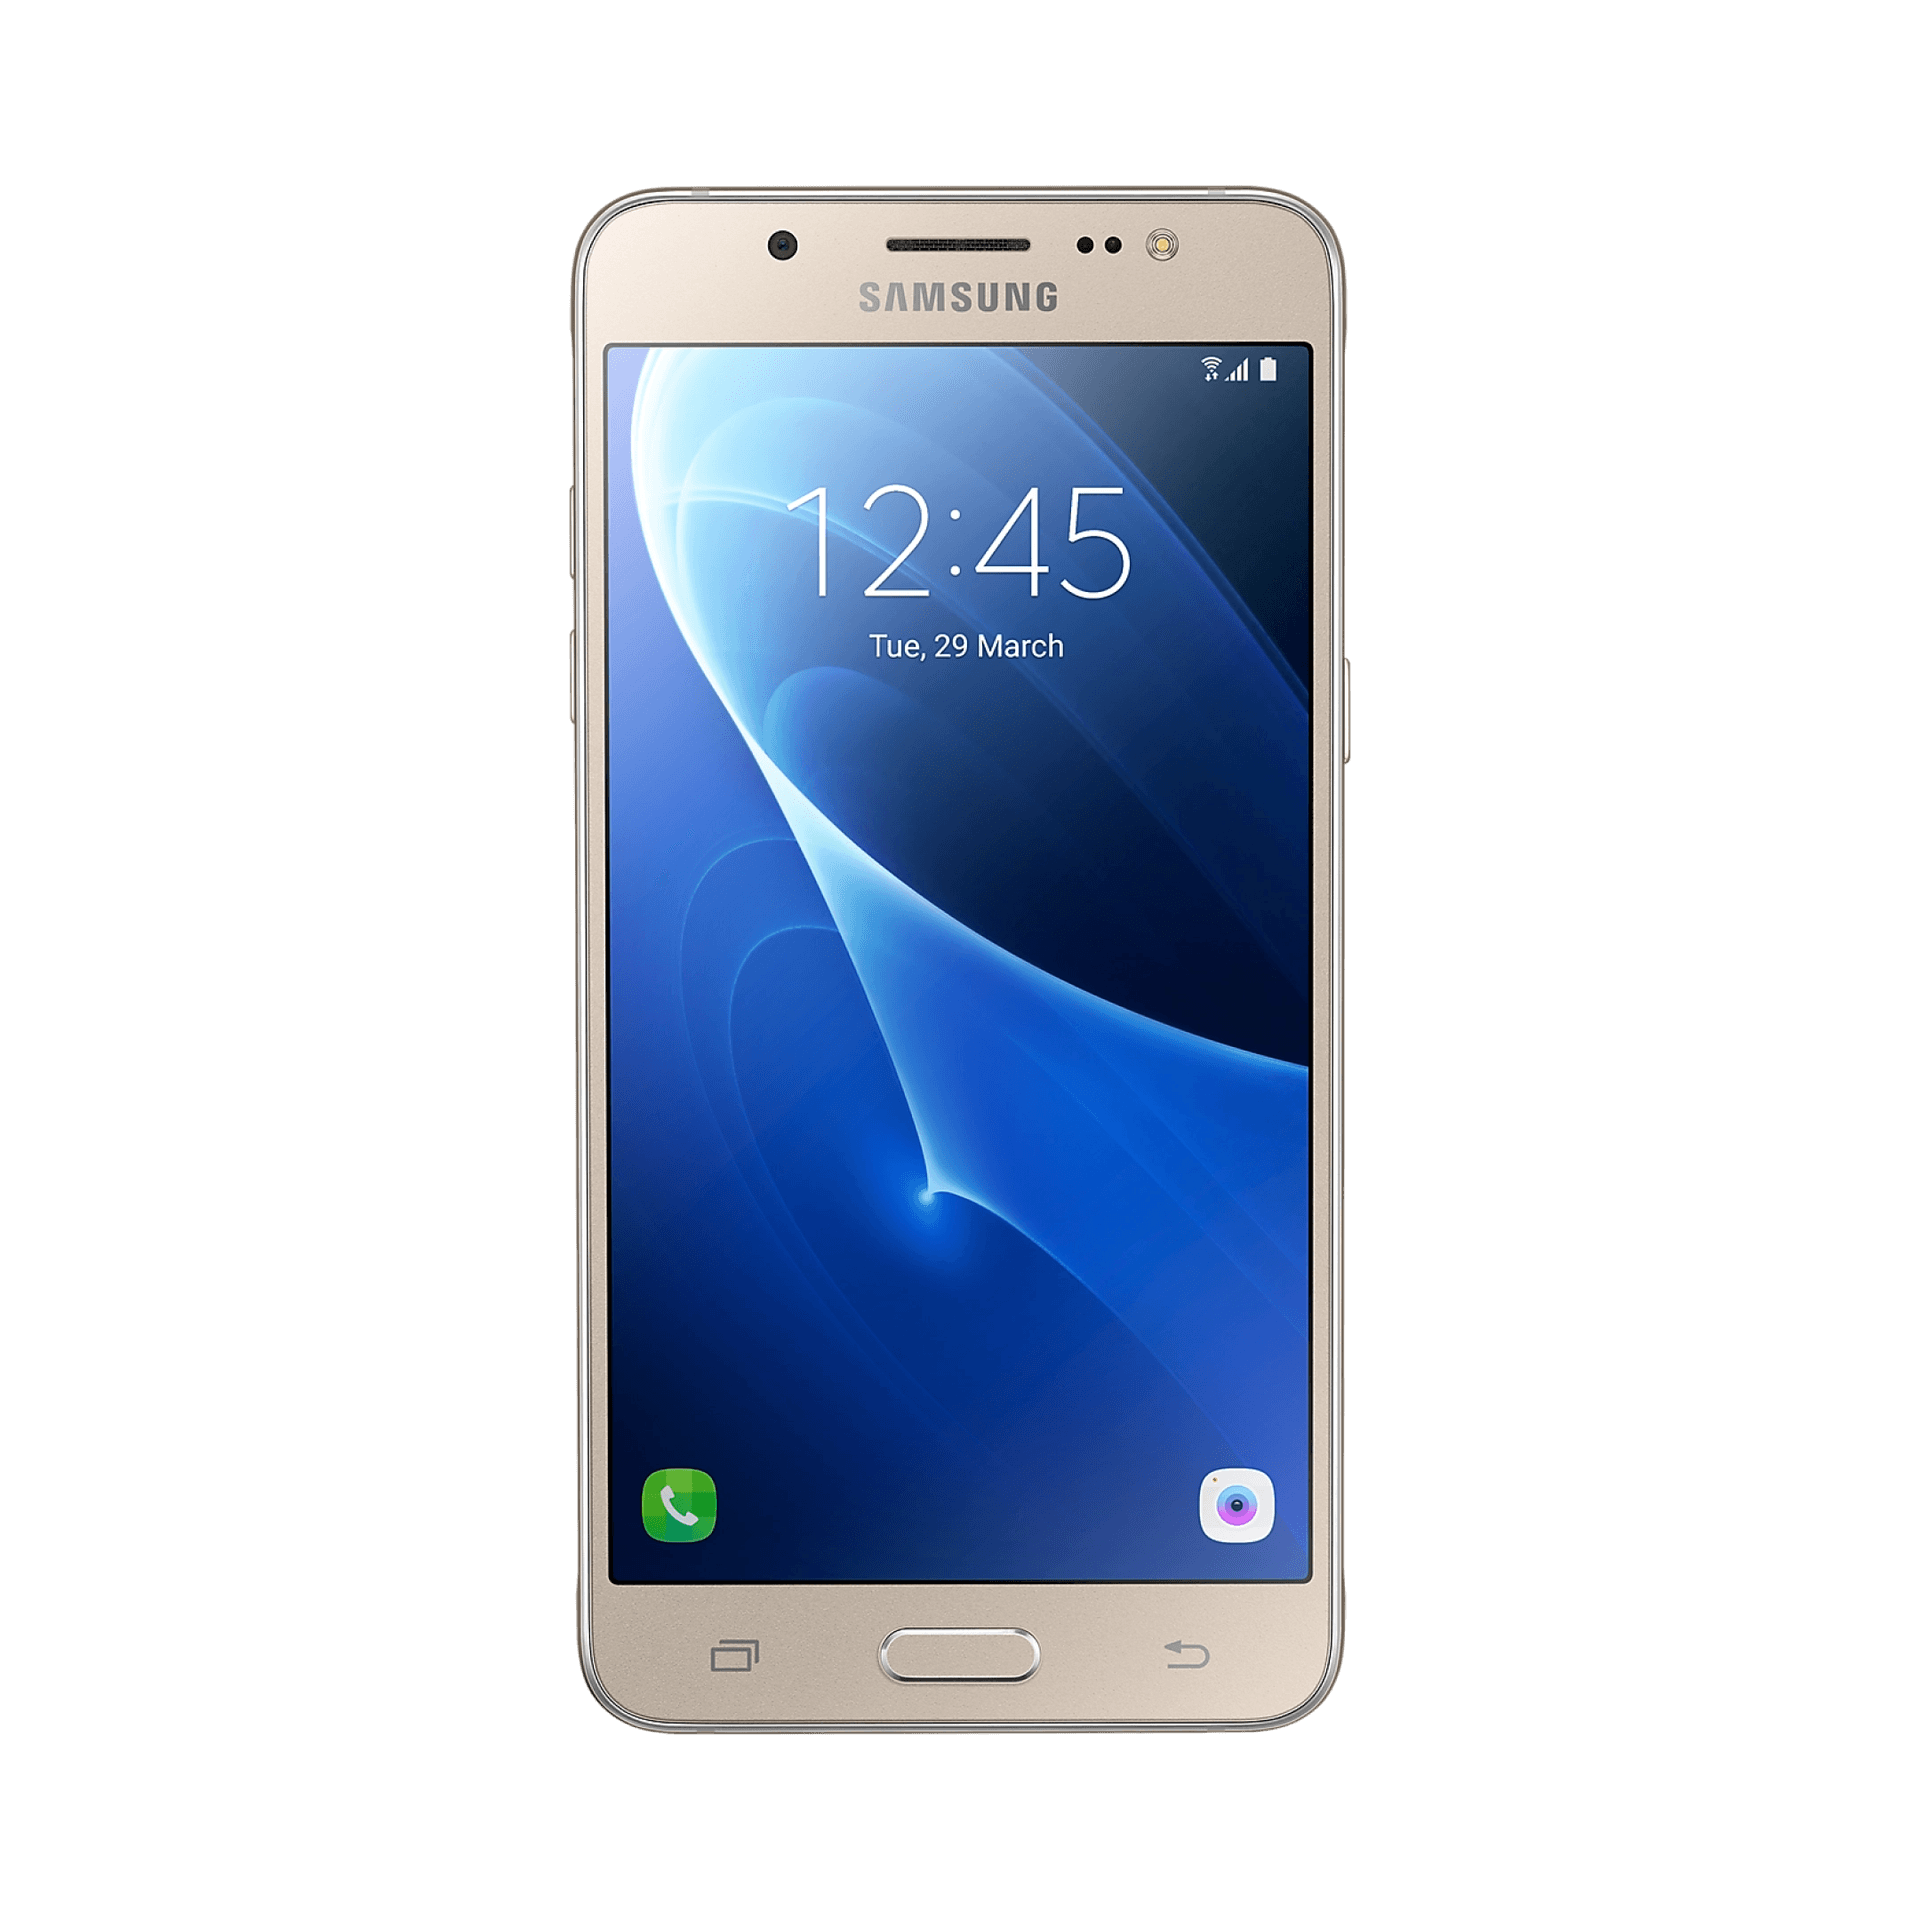 Купить j 5. Samsung Galaxy j7 2016 Gold. Samsung Galaxy j5 2016. Samsung Galaxy j5 2016 White. Samsung Galaxy j5 (2016) Gold.